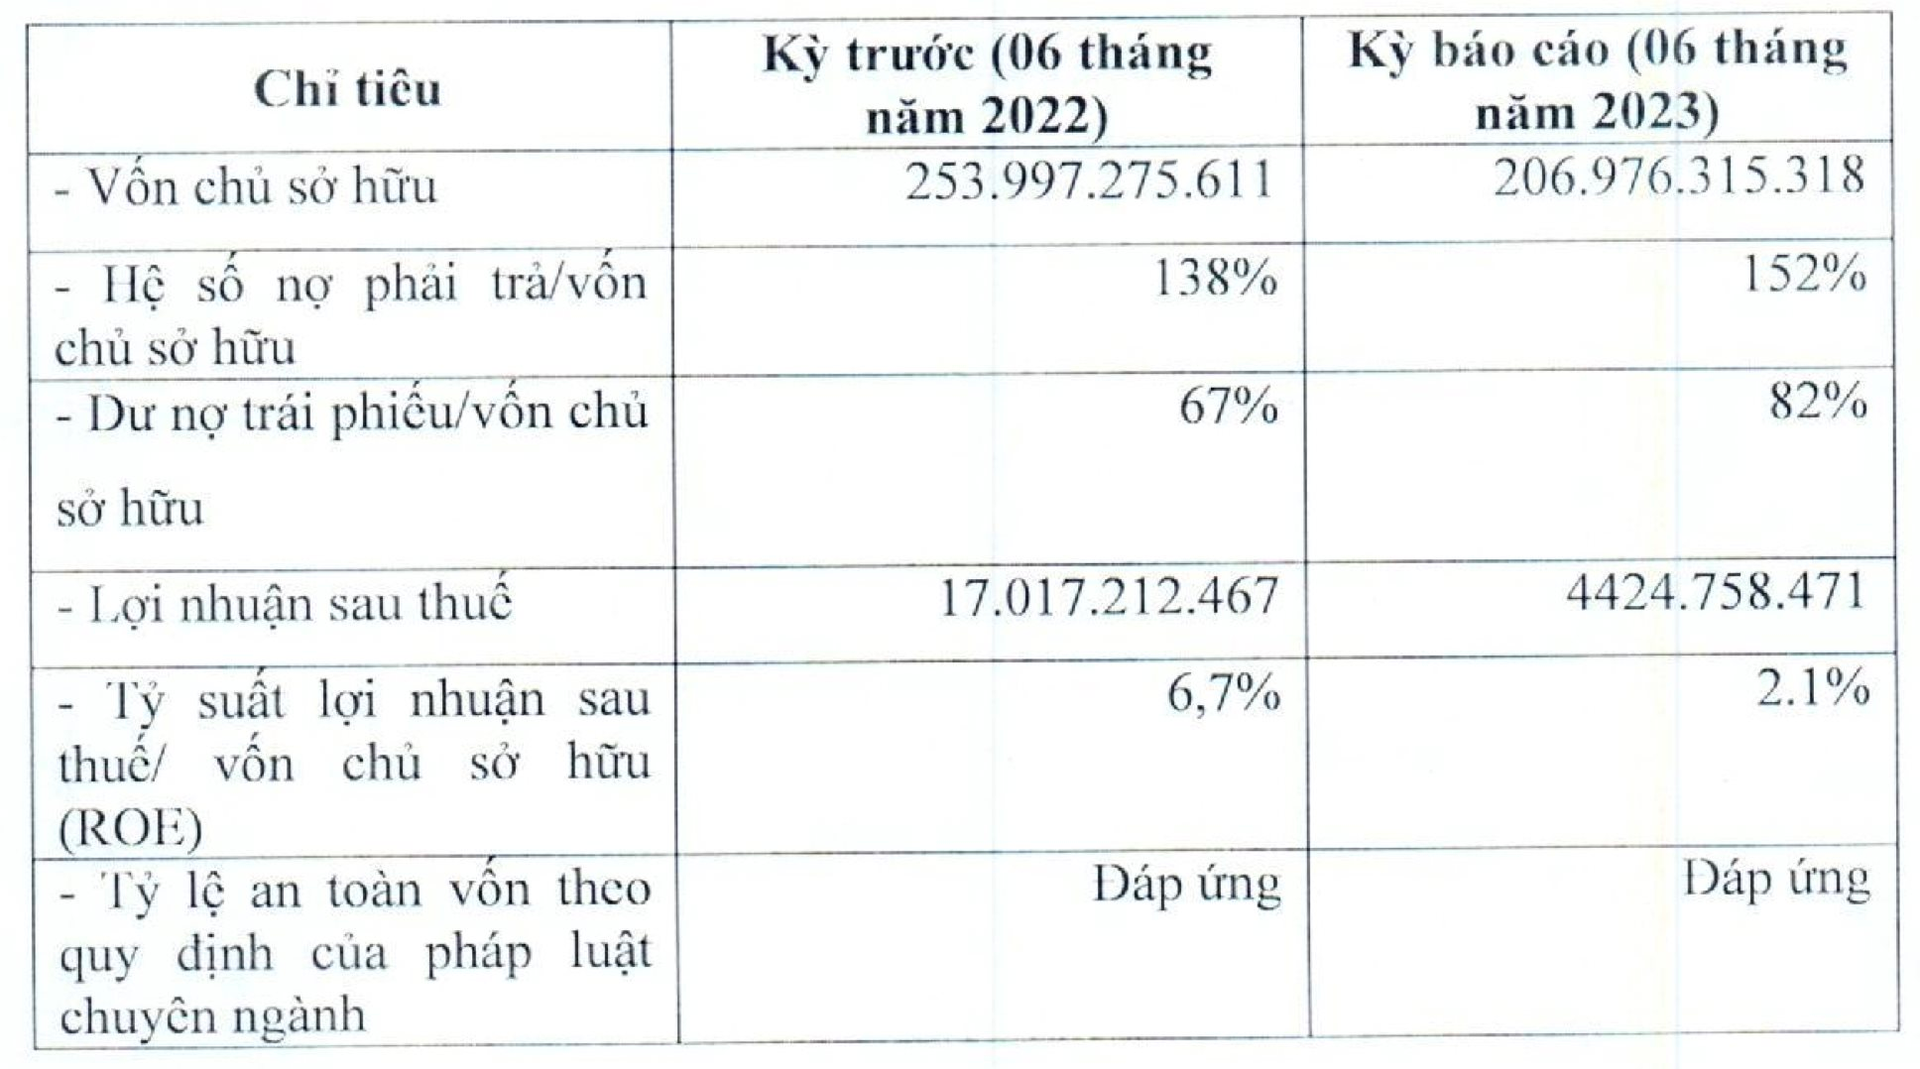 Bkav Pro của ông Nguyễn Từ Quảng: Từ mức giá 2.100 tỷ đồng, vay tiền cho giấc mơ Bphone đến cú trượt về lợi nhuận và nợ khó đòi tại VNDirect - Ảnh 4.